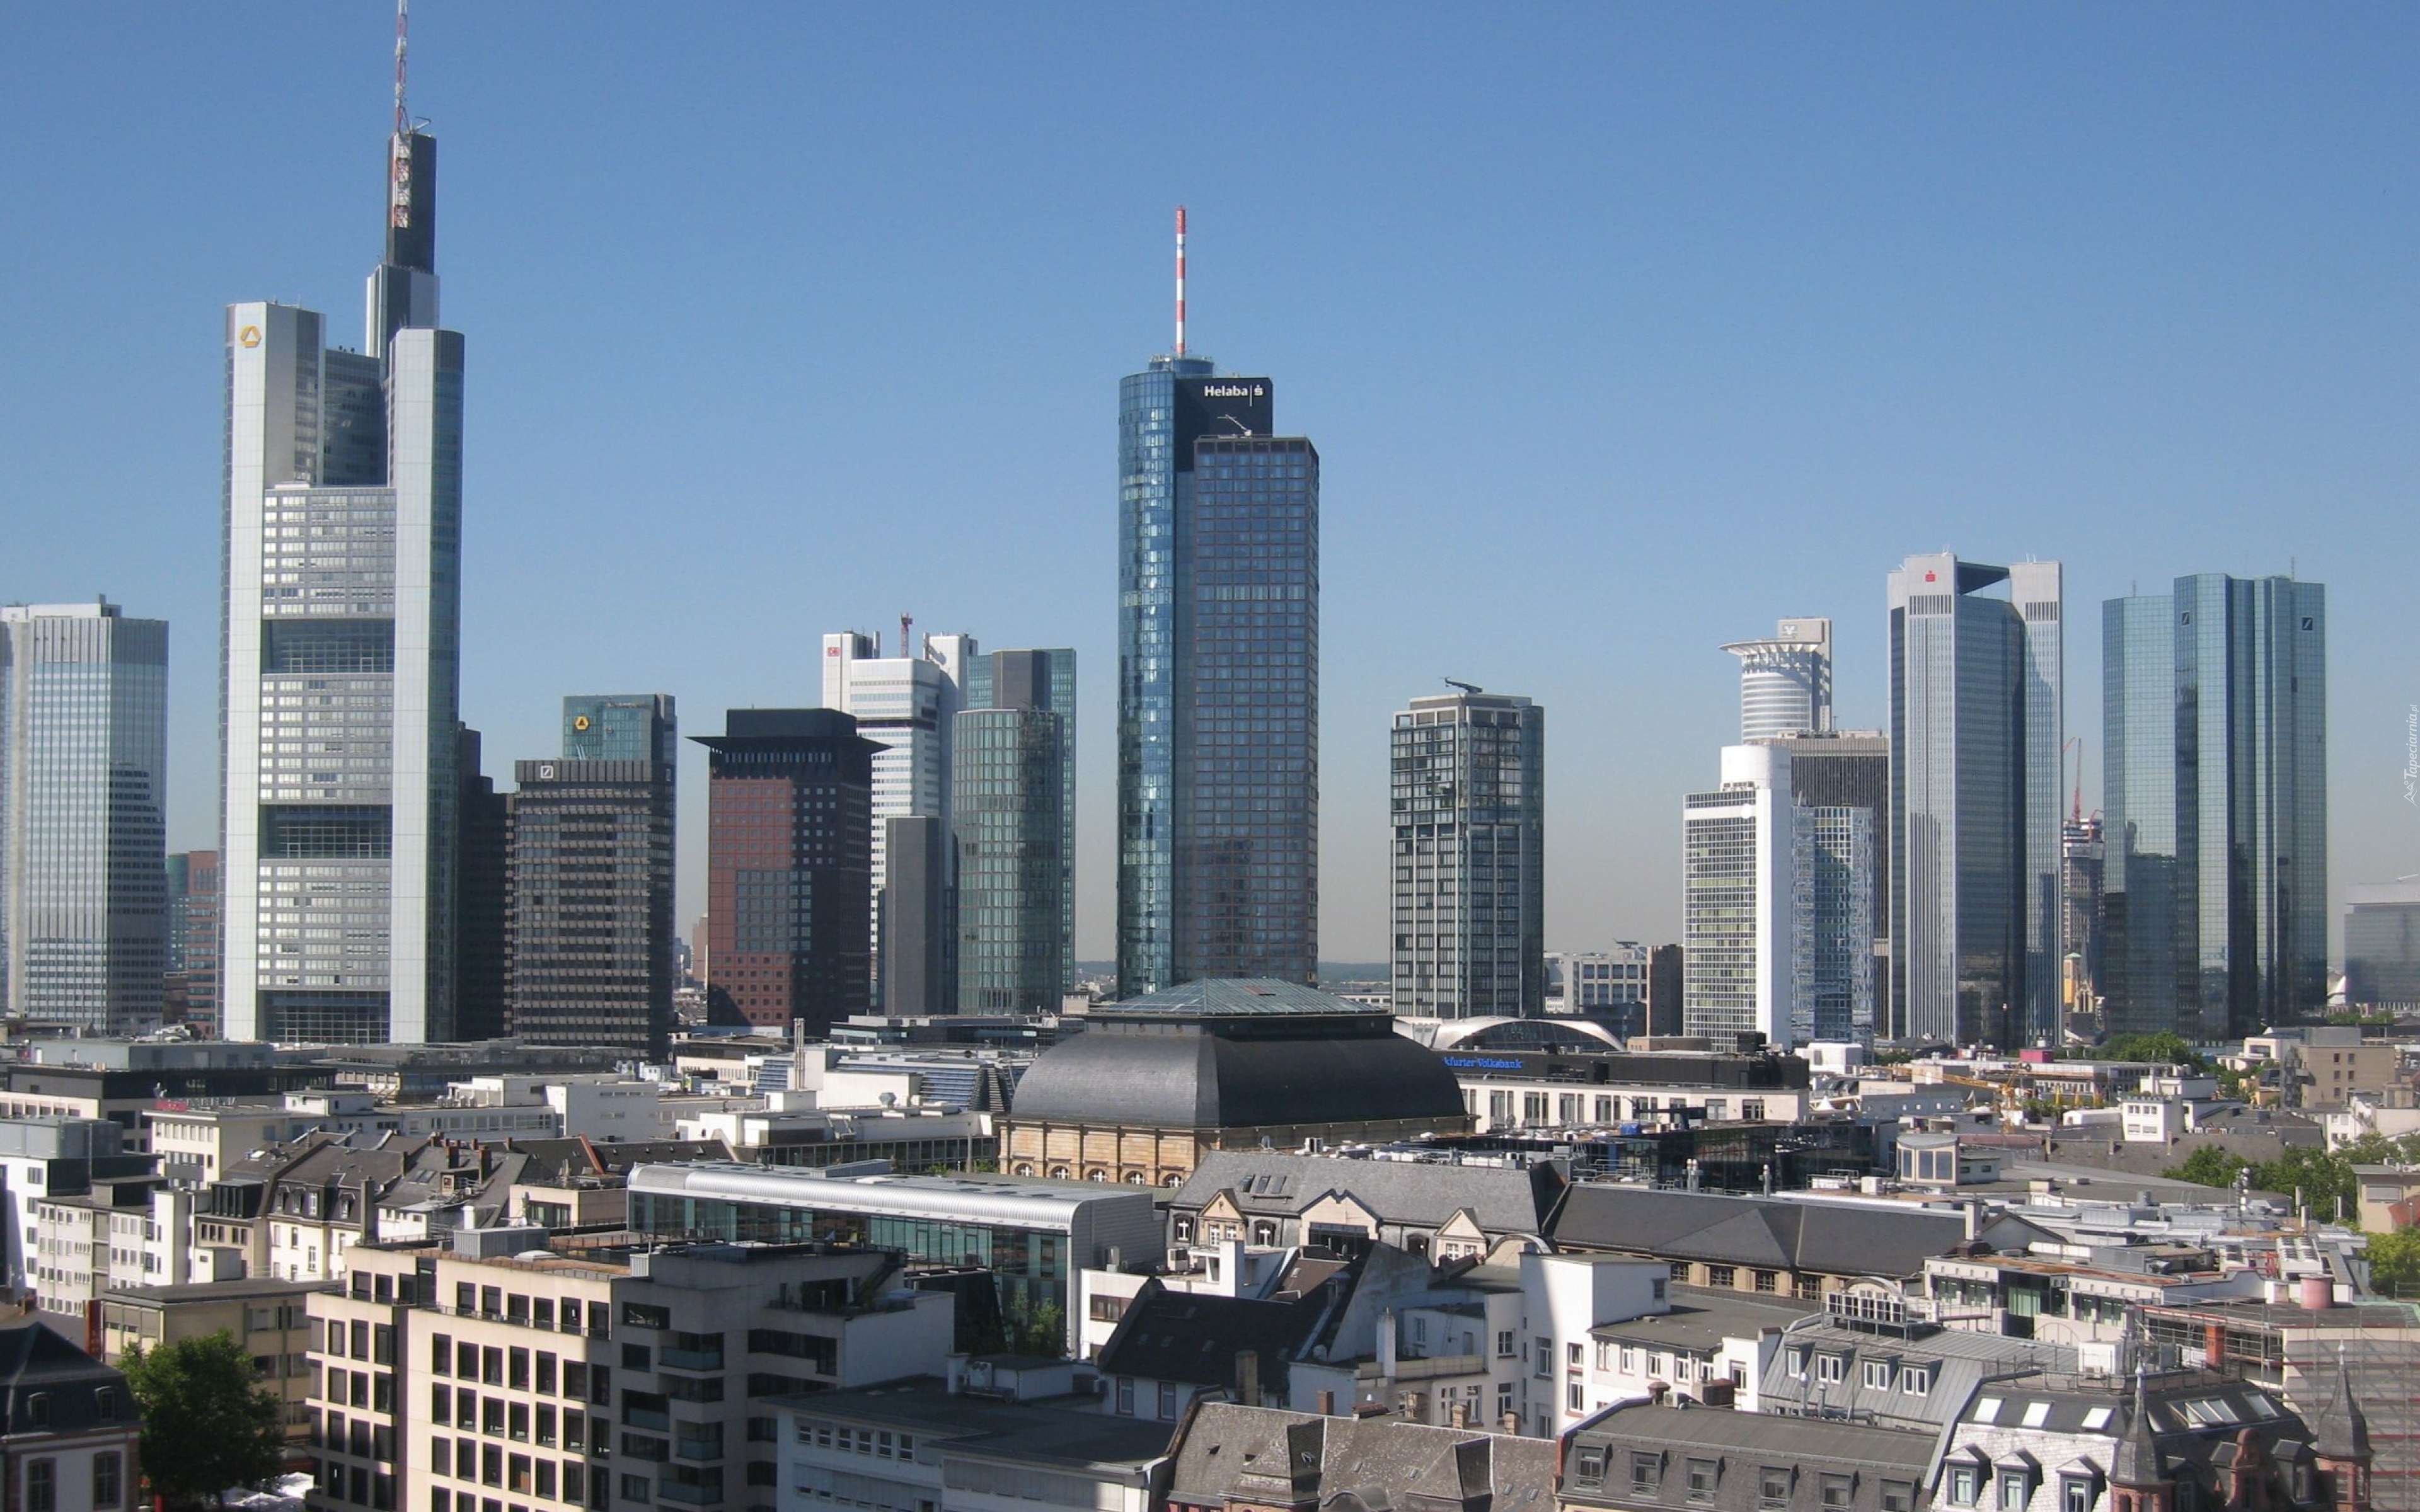 Frankfurt, Niemcy, Wieżowiec